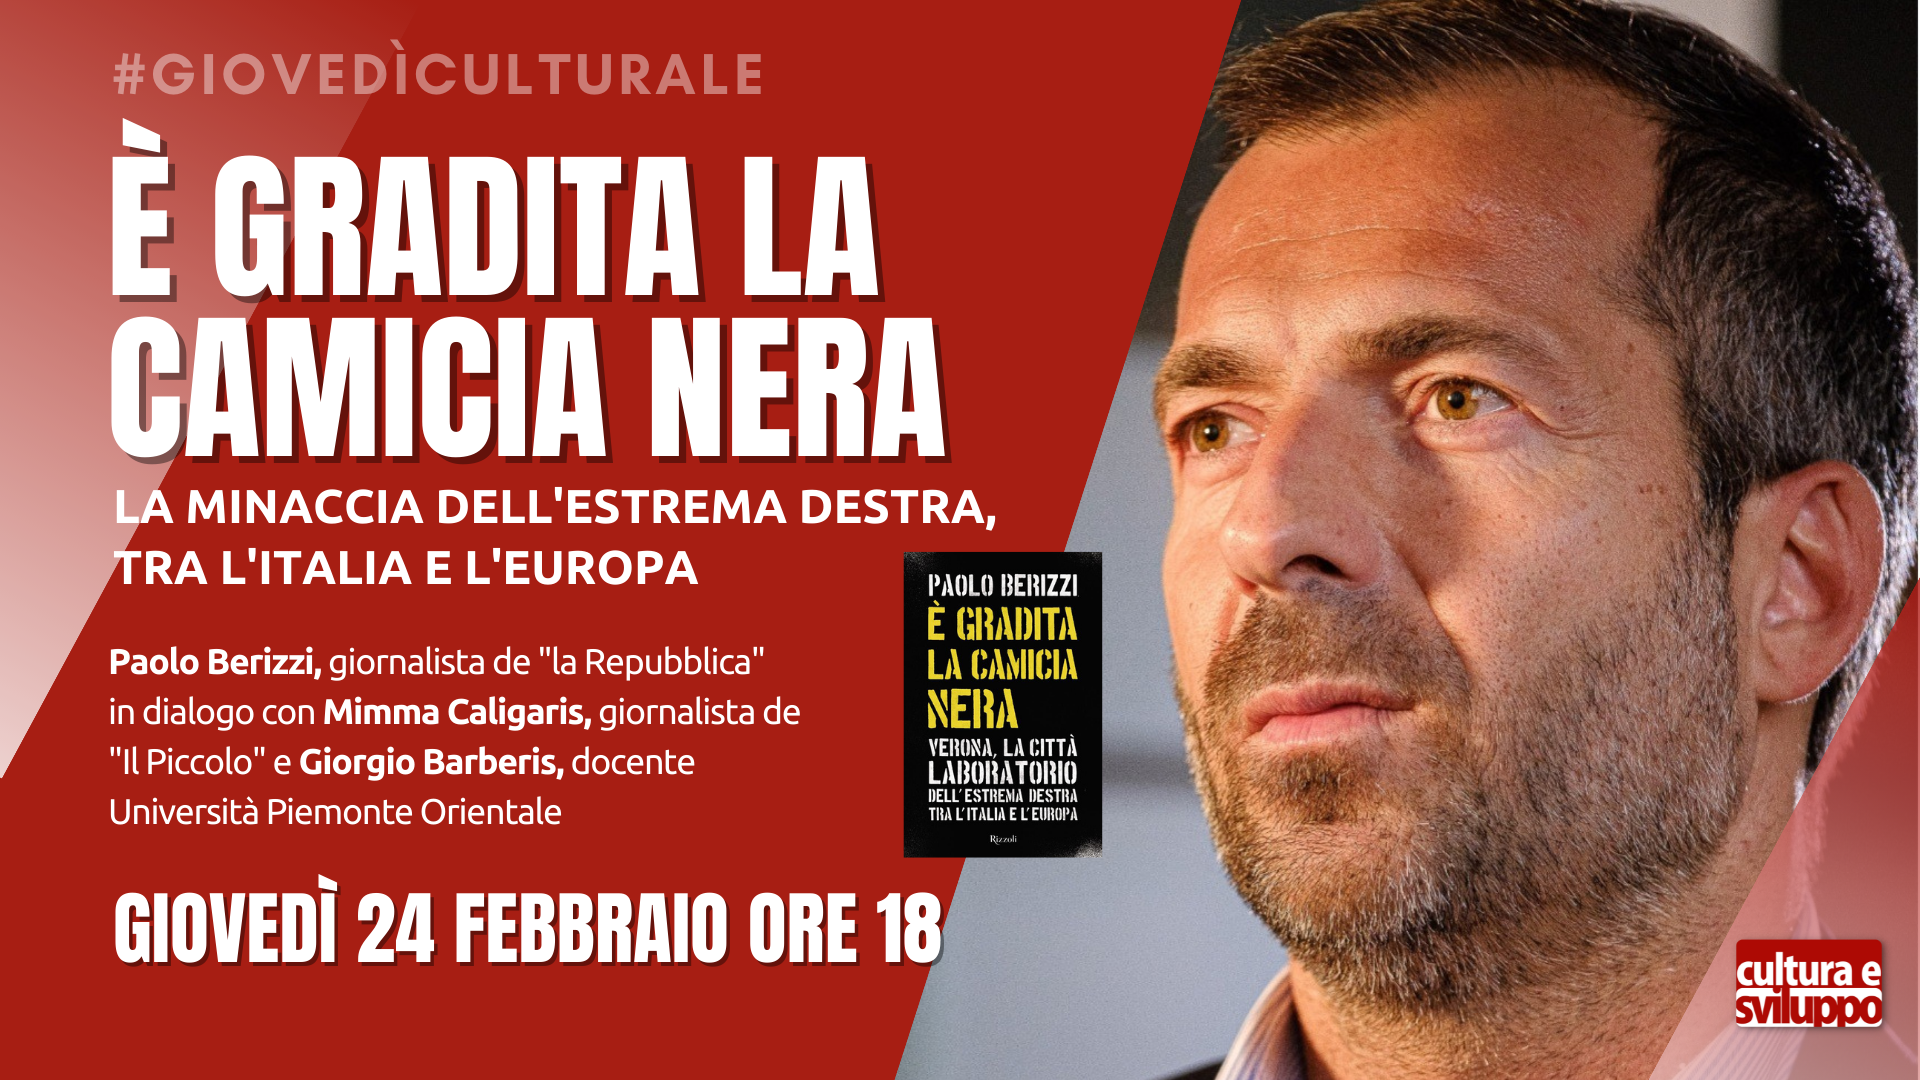 Paolo Berizzi presenta “È gradita la camicia nera”, la minaccia dell’estrema destra tra l’Italia e l’Europa